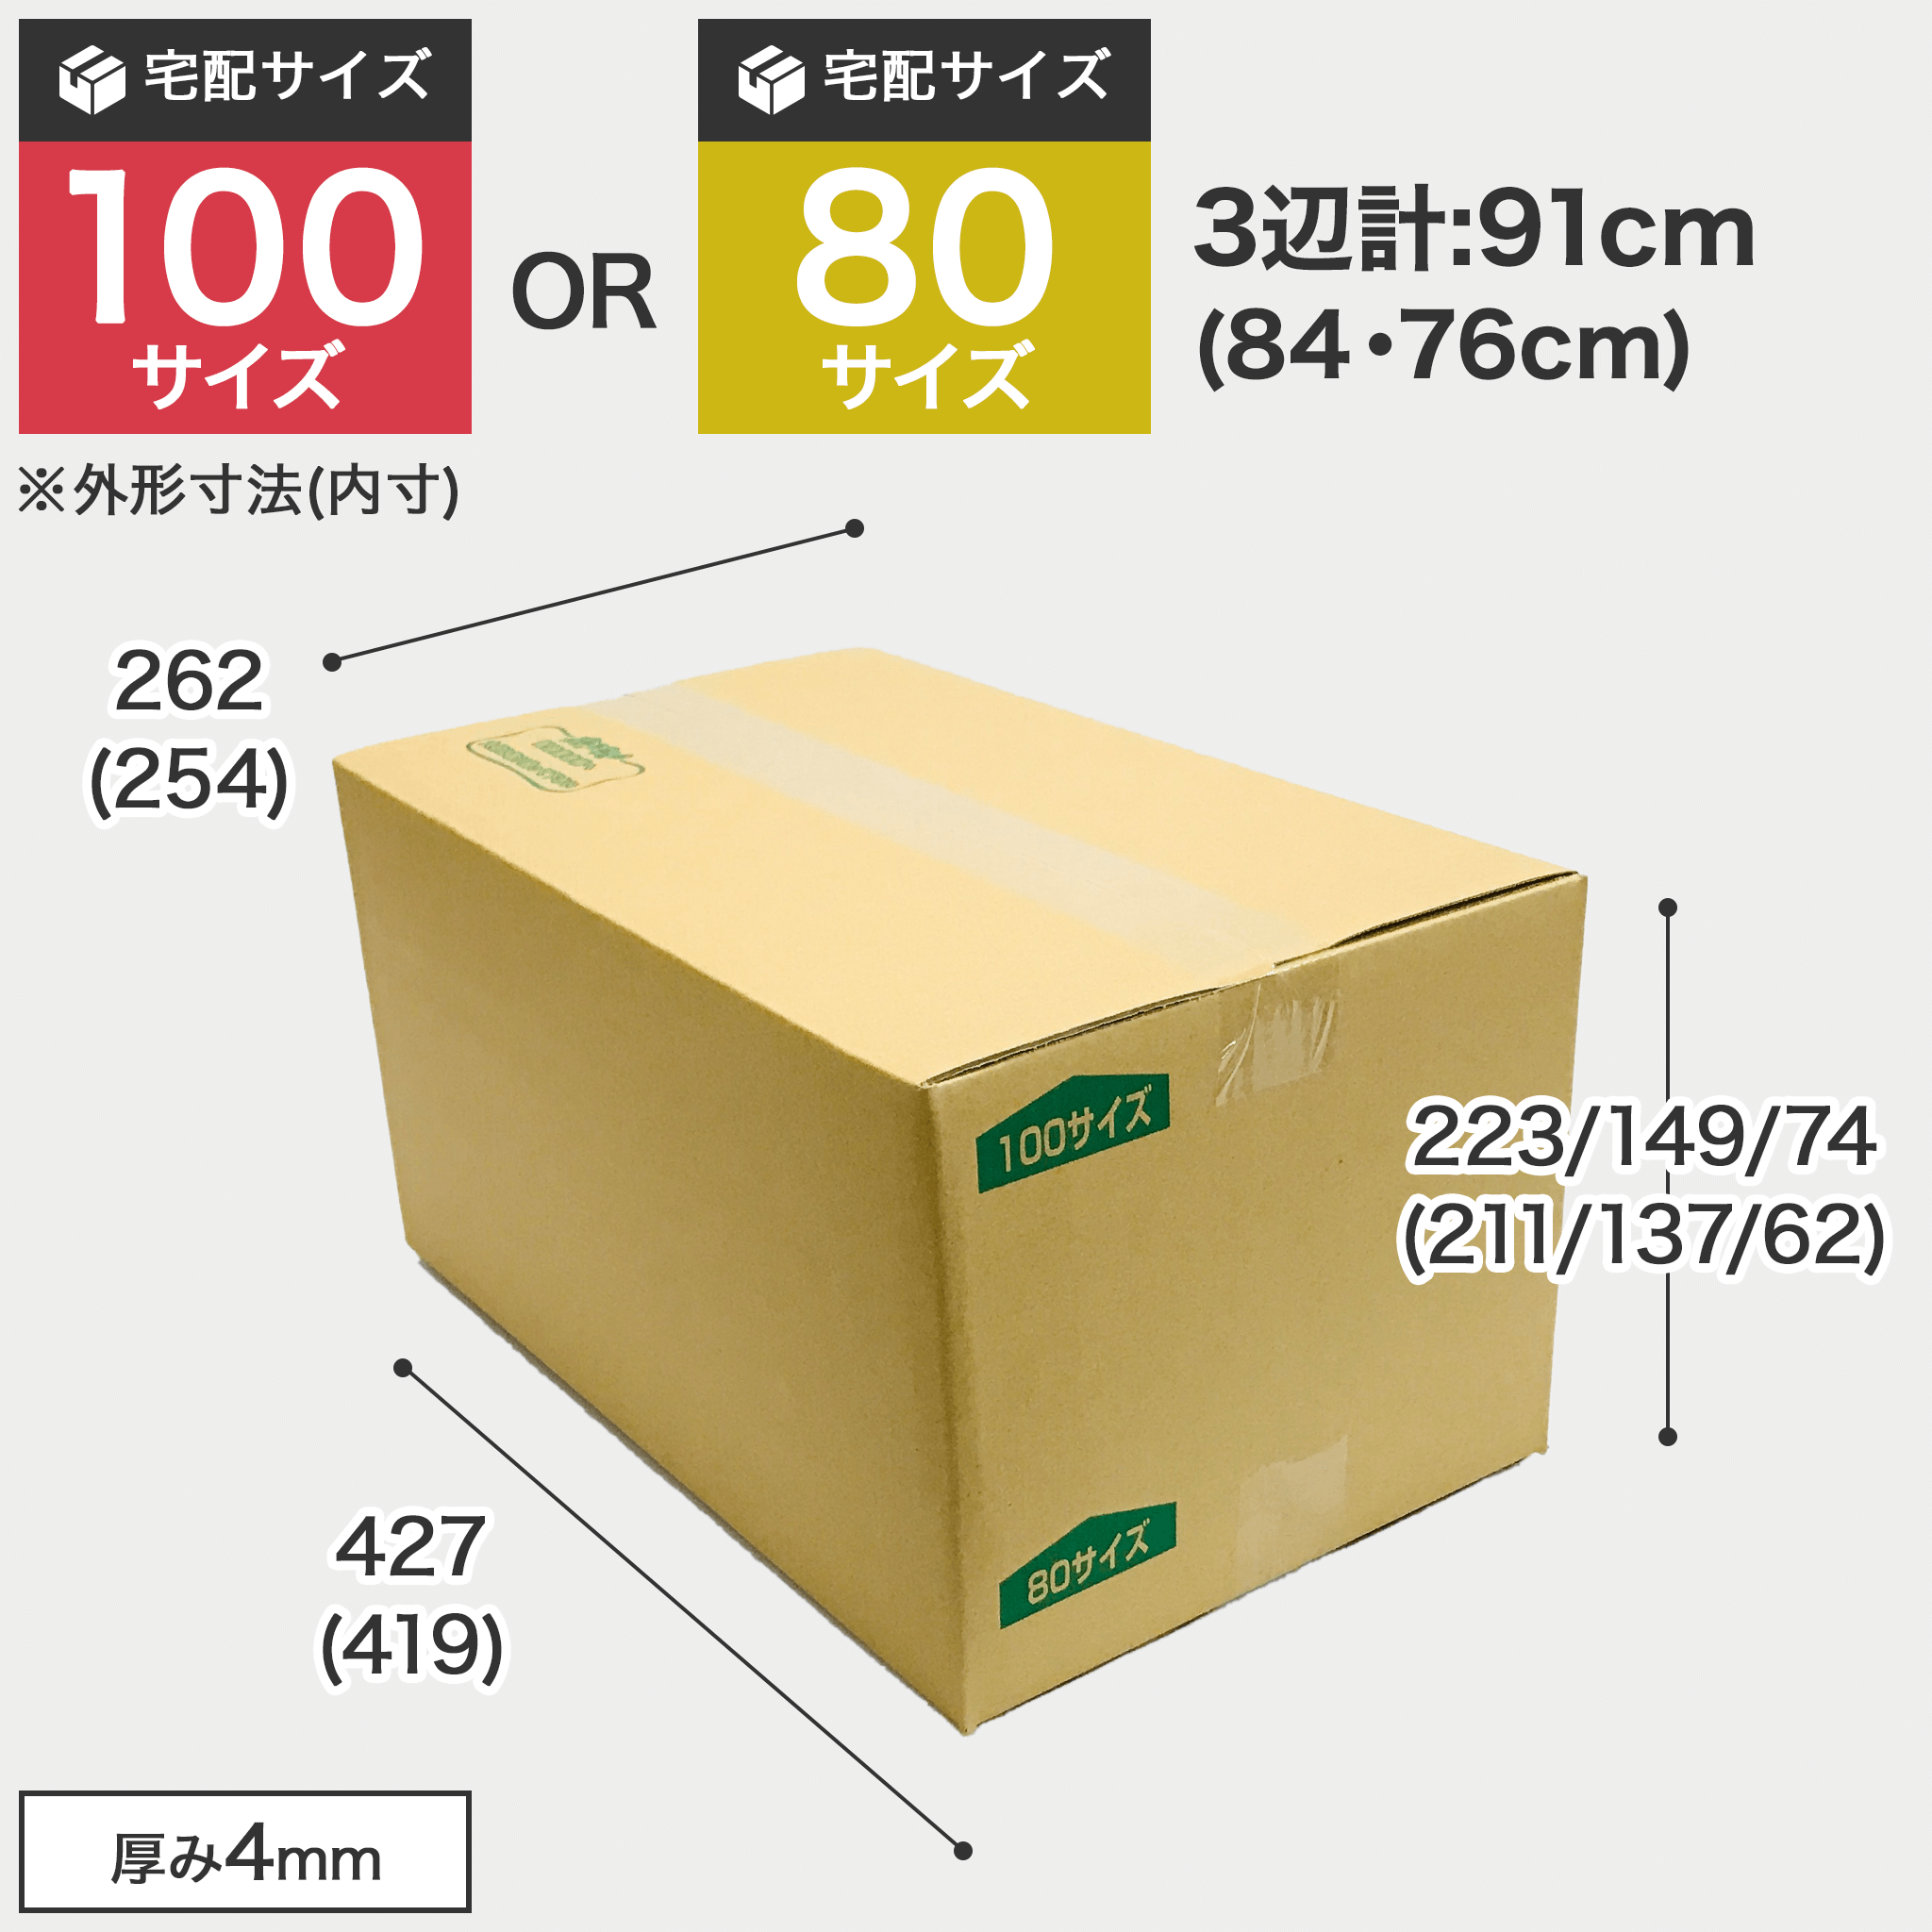 宅配100サイズのダンボール箱 3辺合計約91cm 宅配100サイズのダンボール箱ですが、罫線まで裁ち下げると80サイズになります。